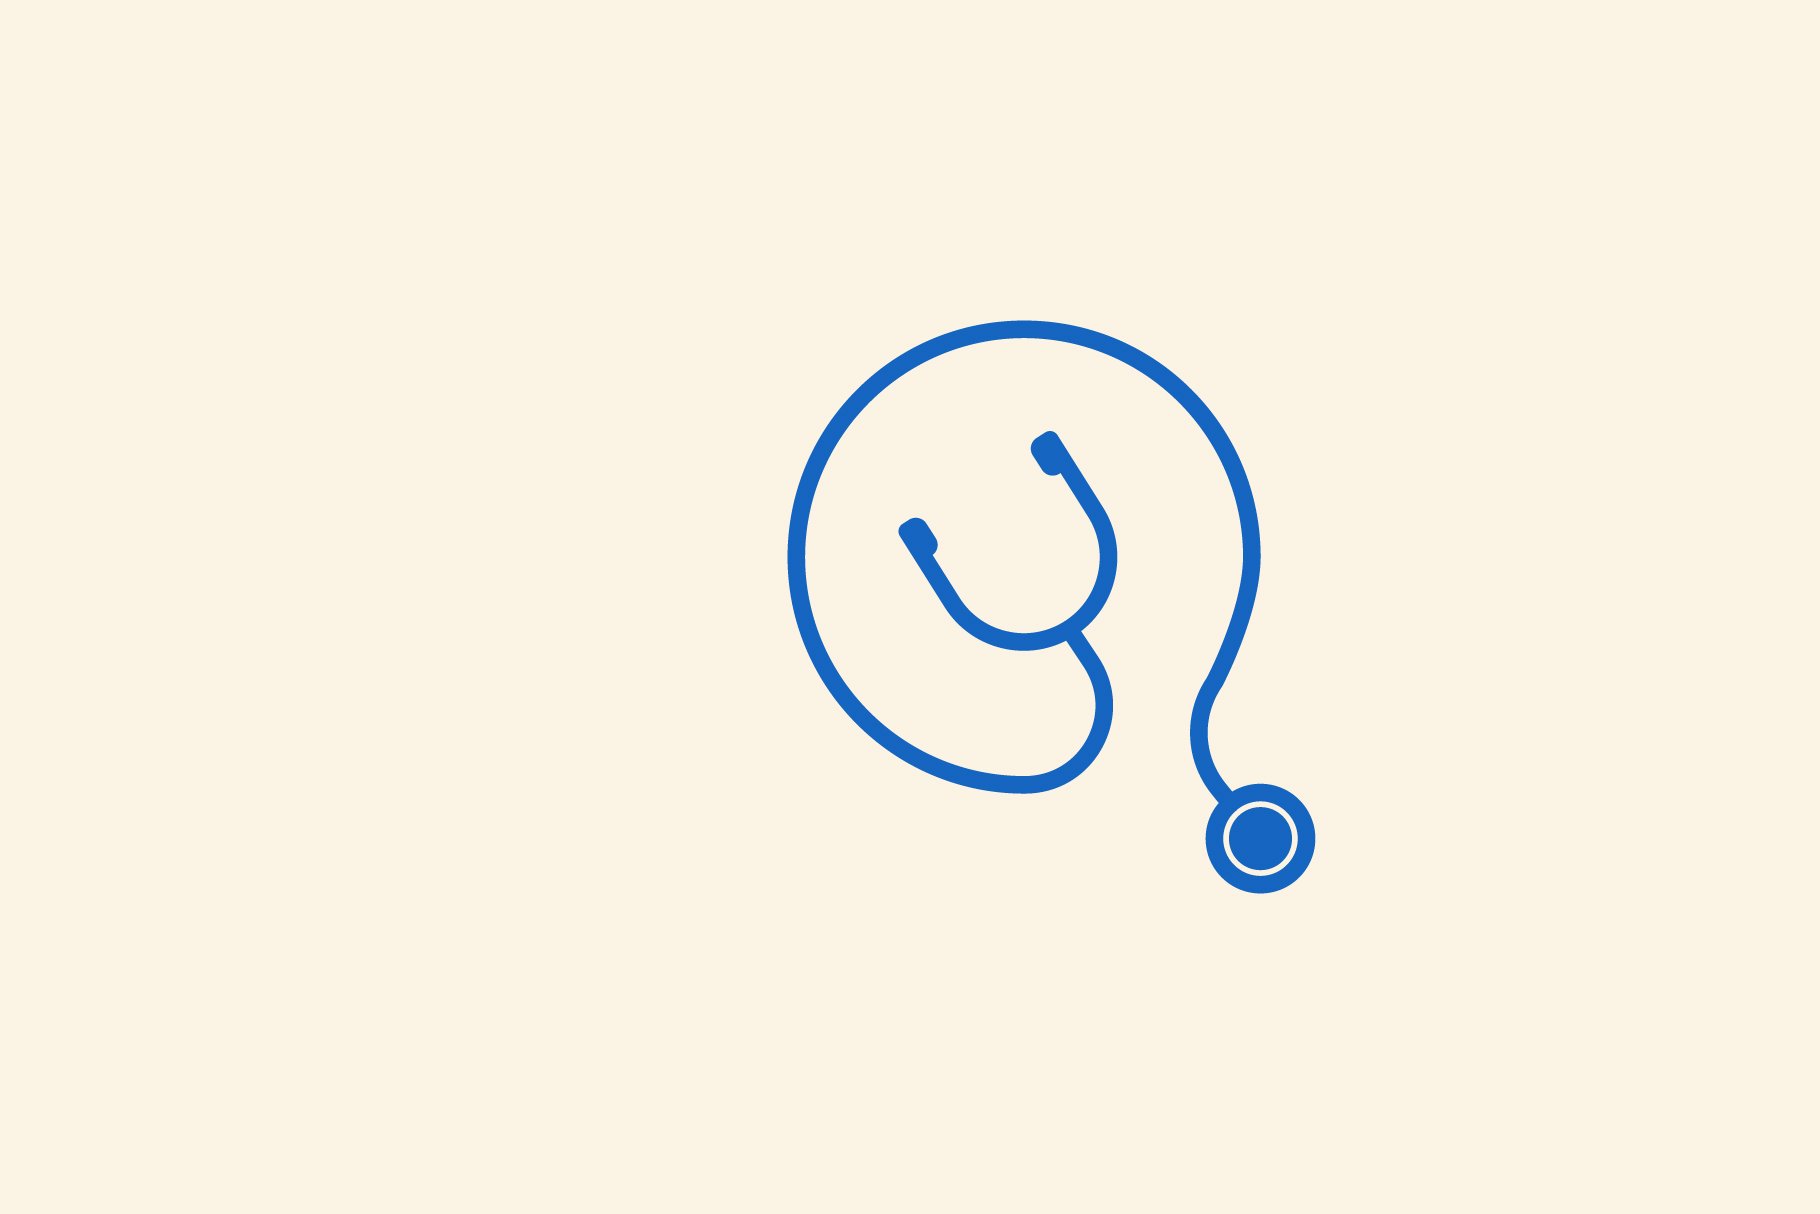 Stethoscope q letter logo vector cover image.